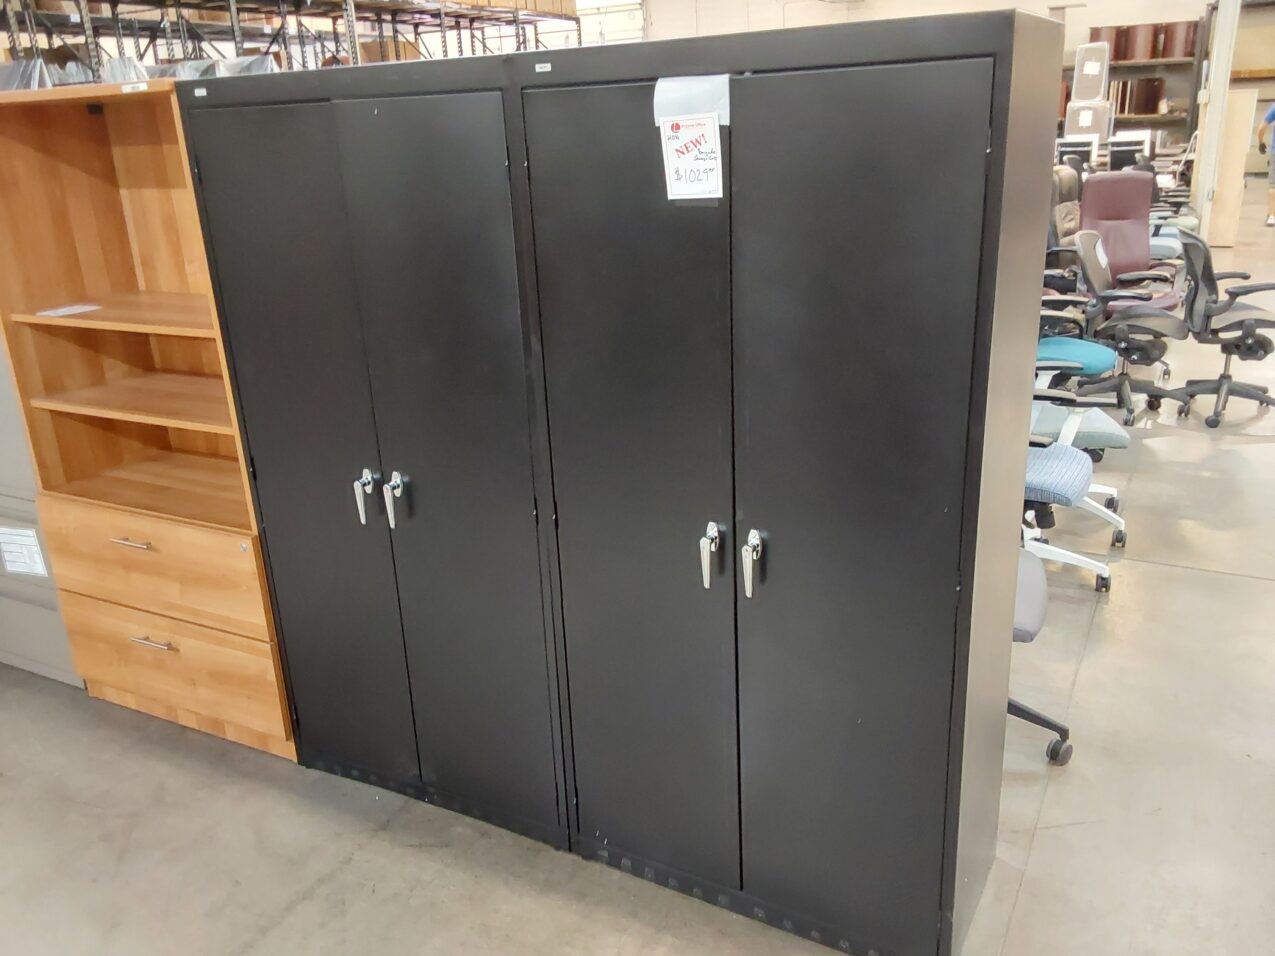 New hon storage cabinet